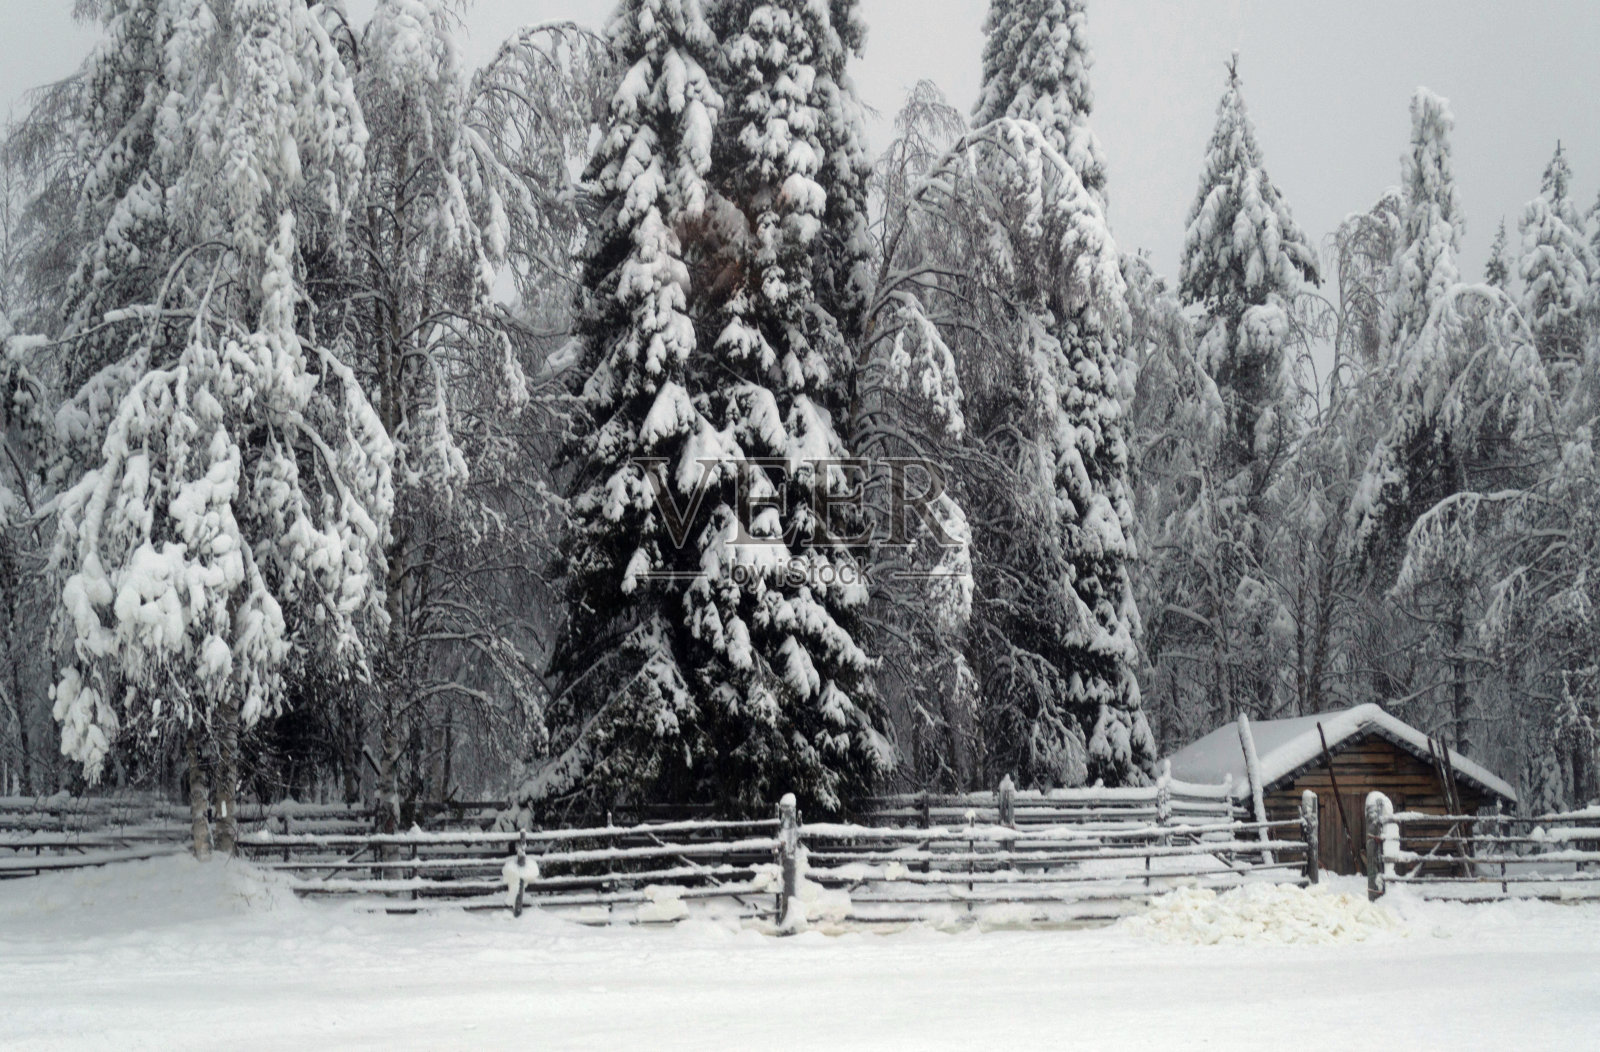 下雪的场景照片摄影图片